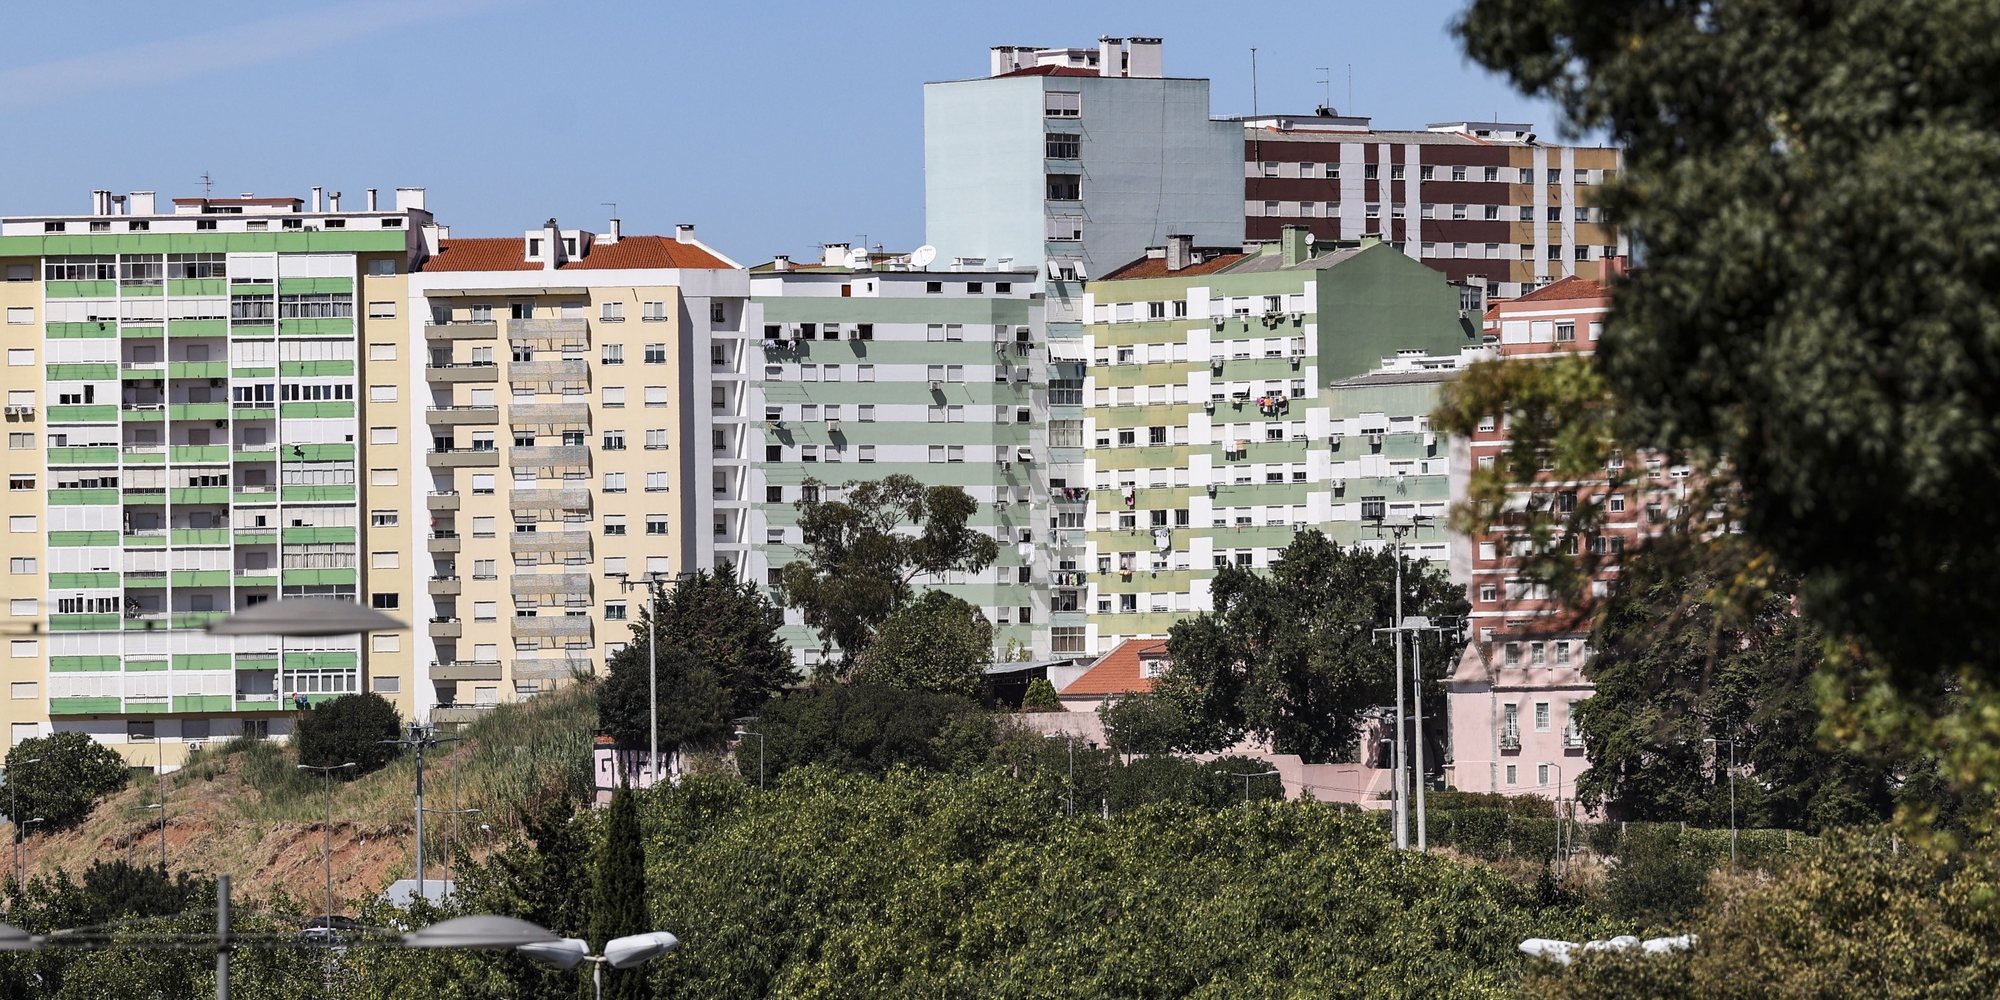 Prédios para habitação própria, arendar, vender ou alugar no distrito de Lisboa, 31 de agosto de 2023. MIGUEL A. LOPES/LUSA